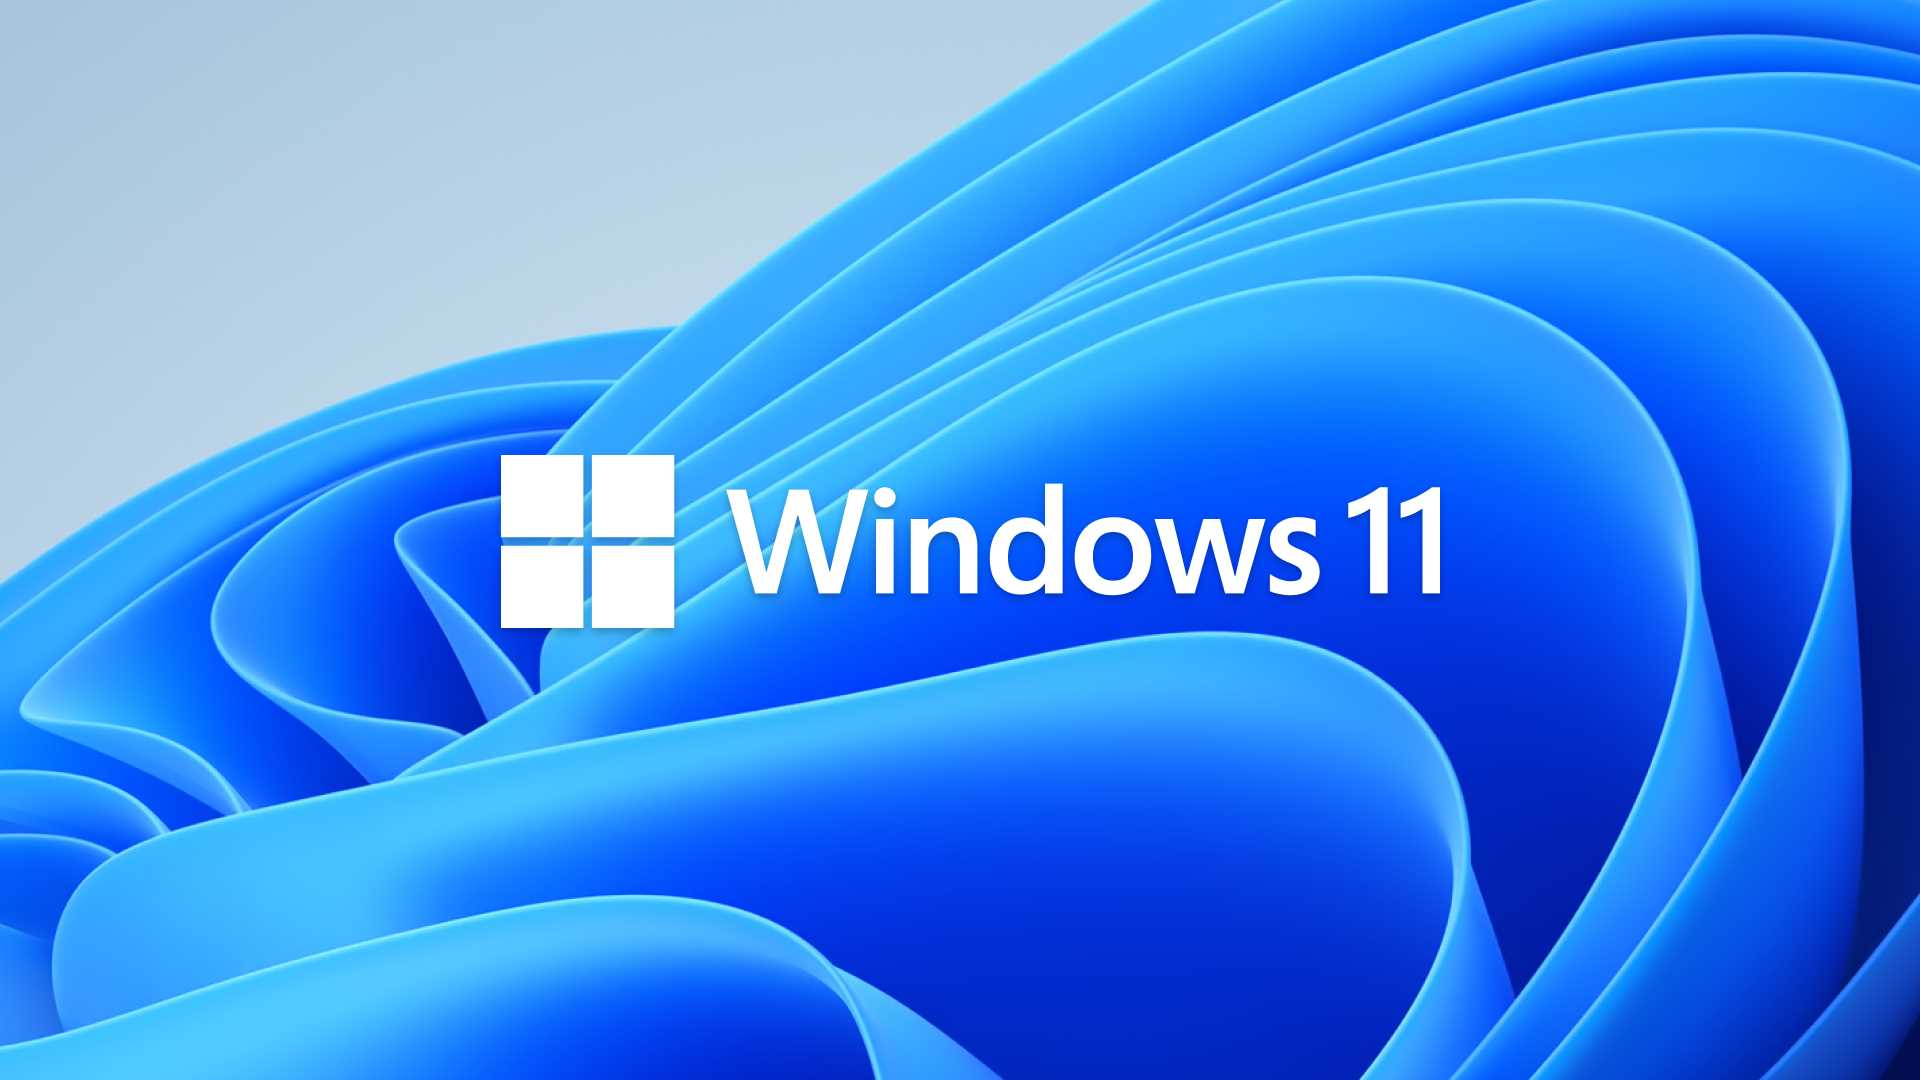 Windows10免费升级Windows11(详细步骤讲解)